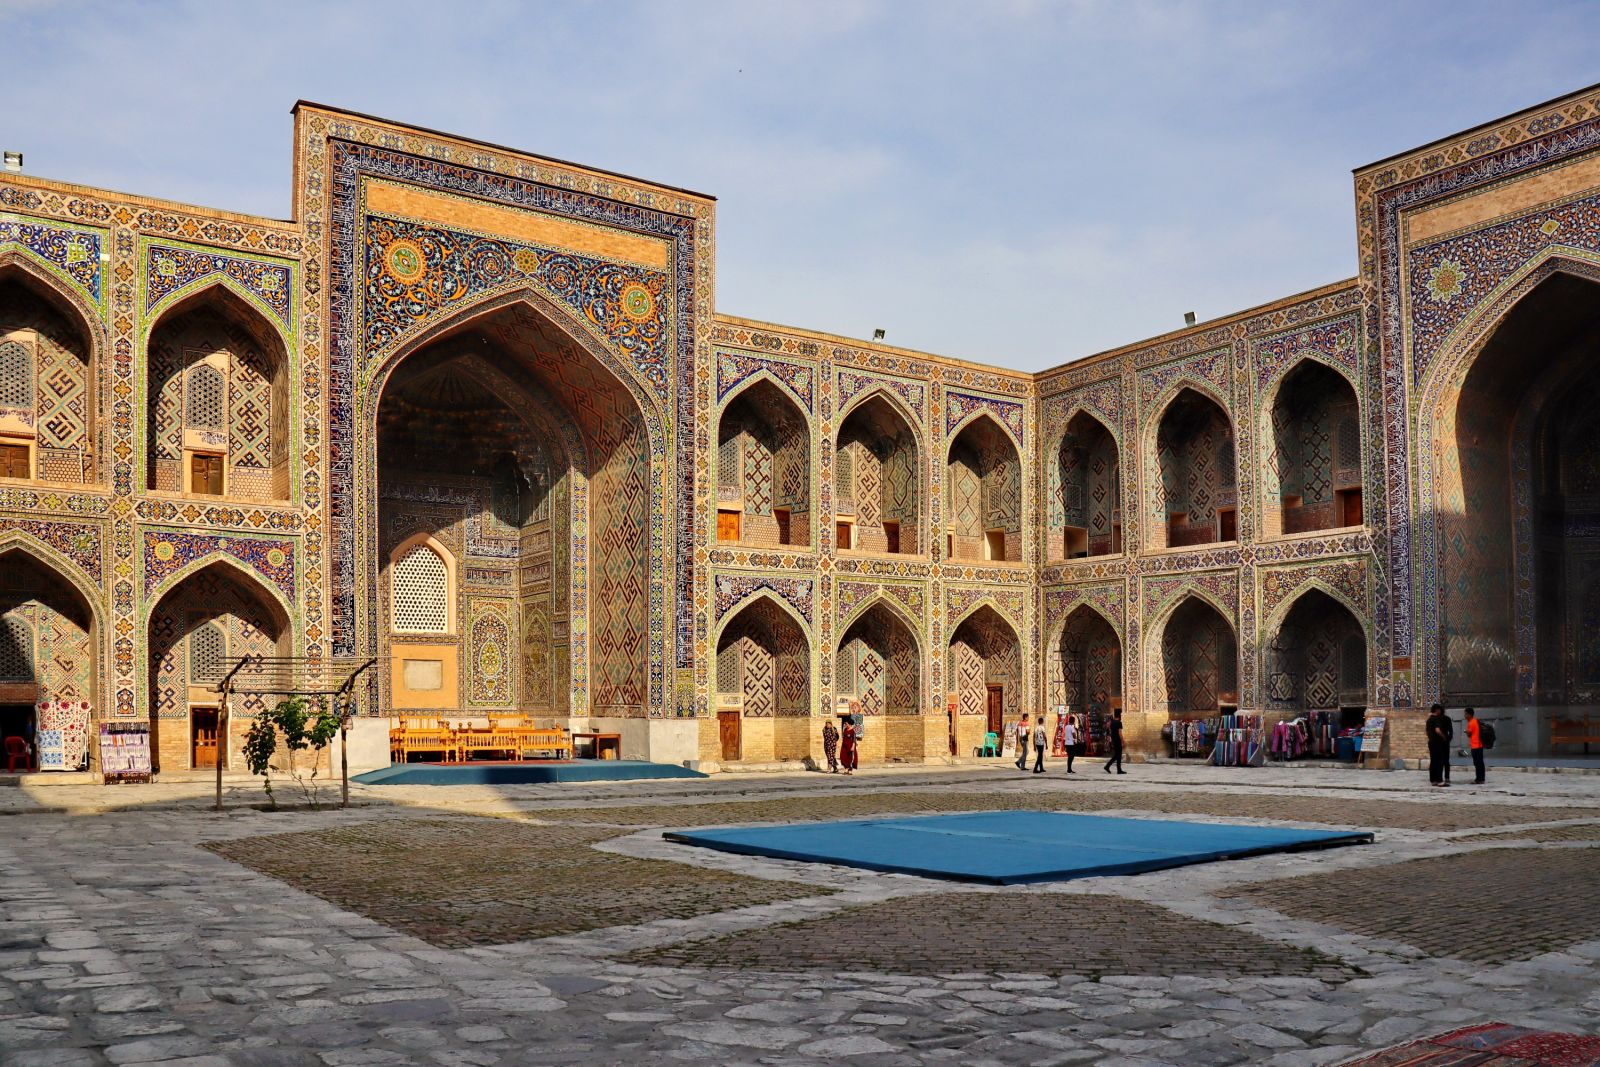 Im Registan in Samarkand